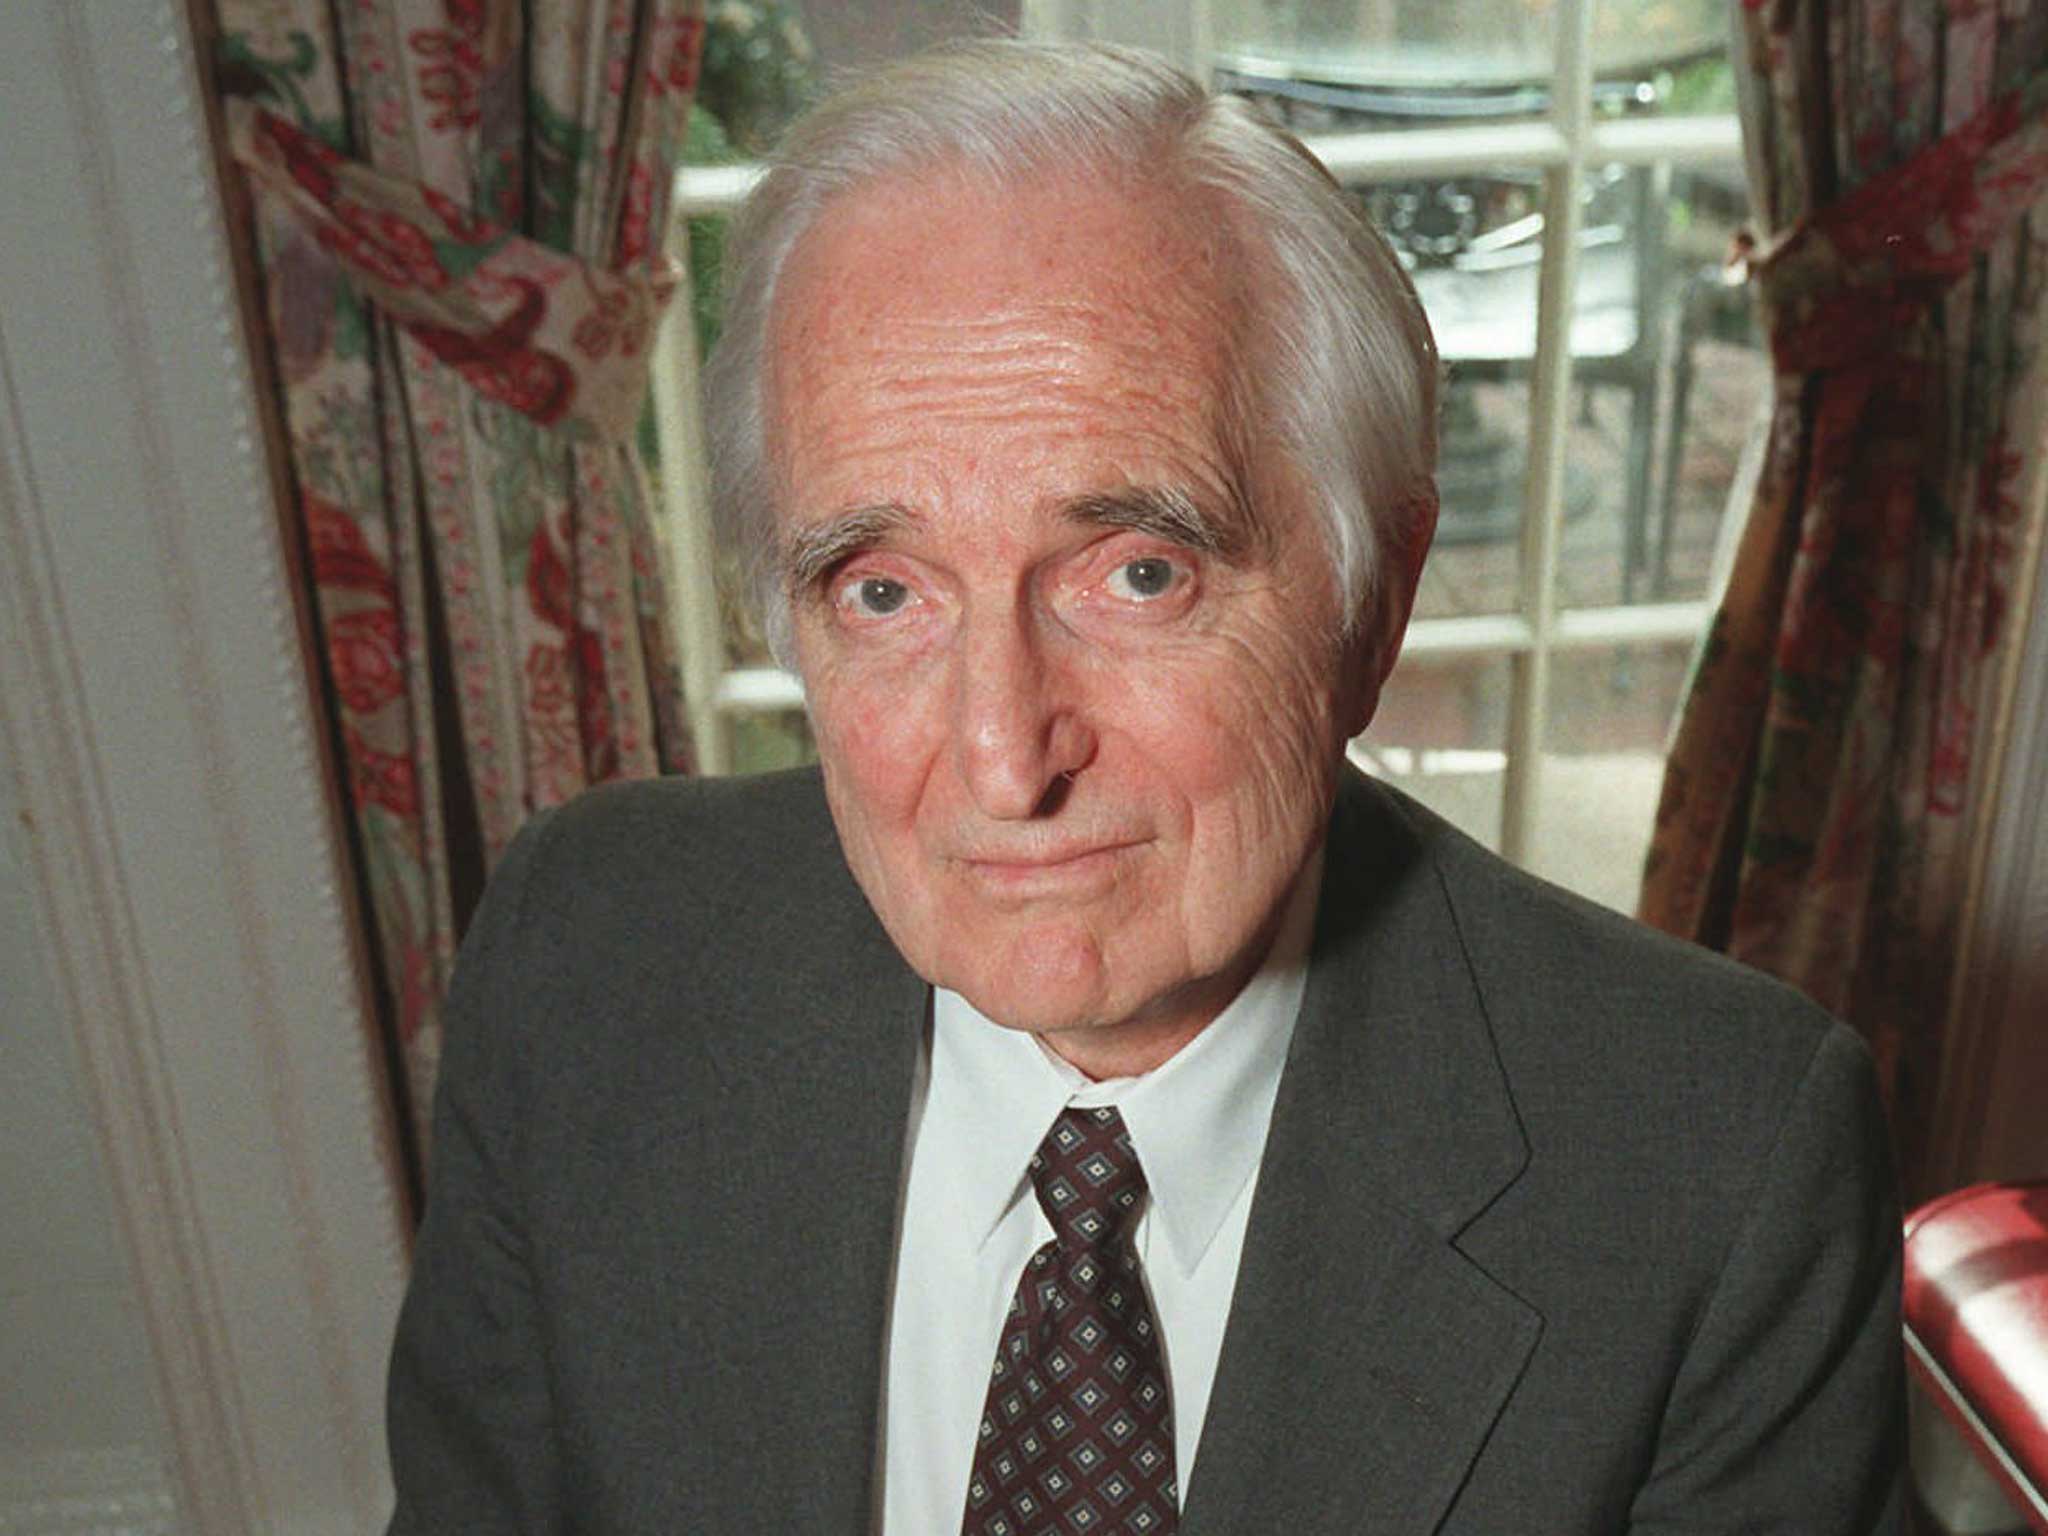 Doug Engelbart died from acute kidney failure